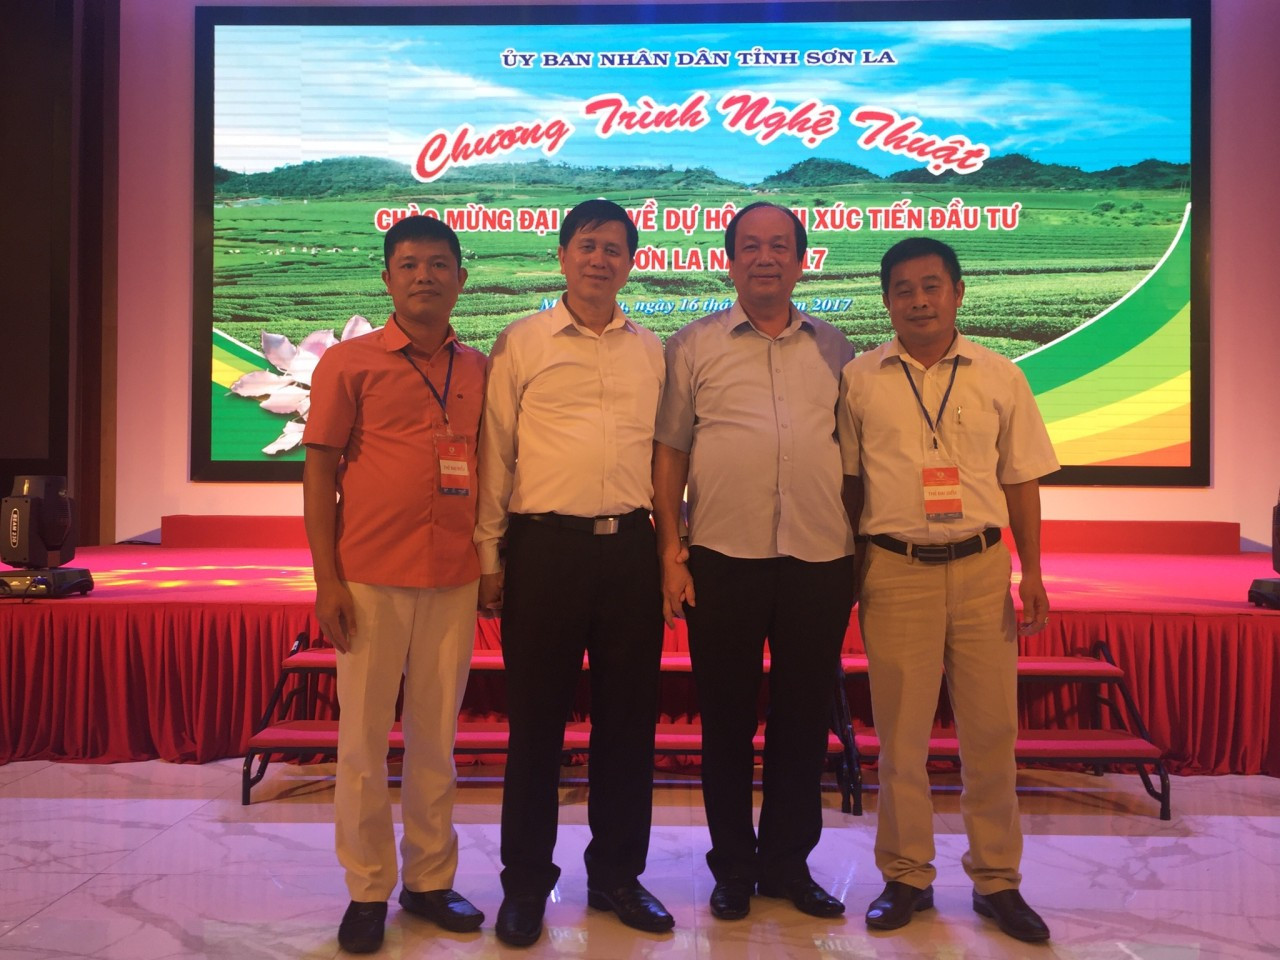 Công ty cổ phần xây dựng TEEL Việt Nam dự Hội nghị xúc tiến đầu tư tỉnh Sơn La ngày 17/7/2017 tại Mộc Châu, Sơn La